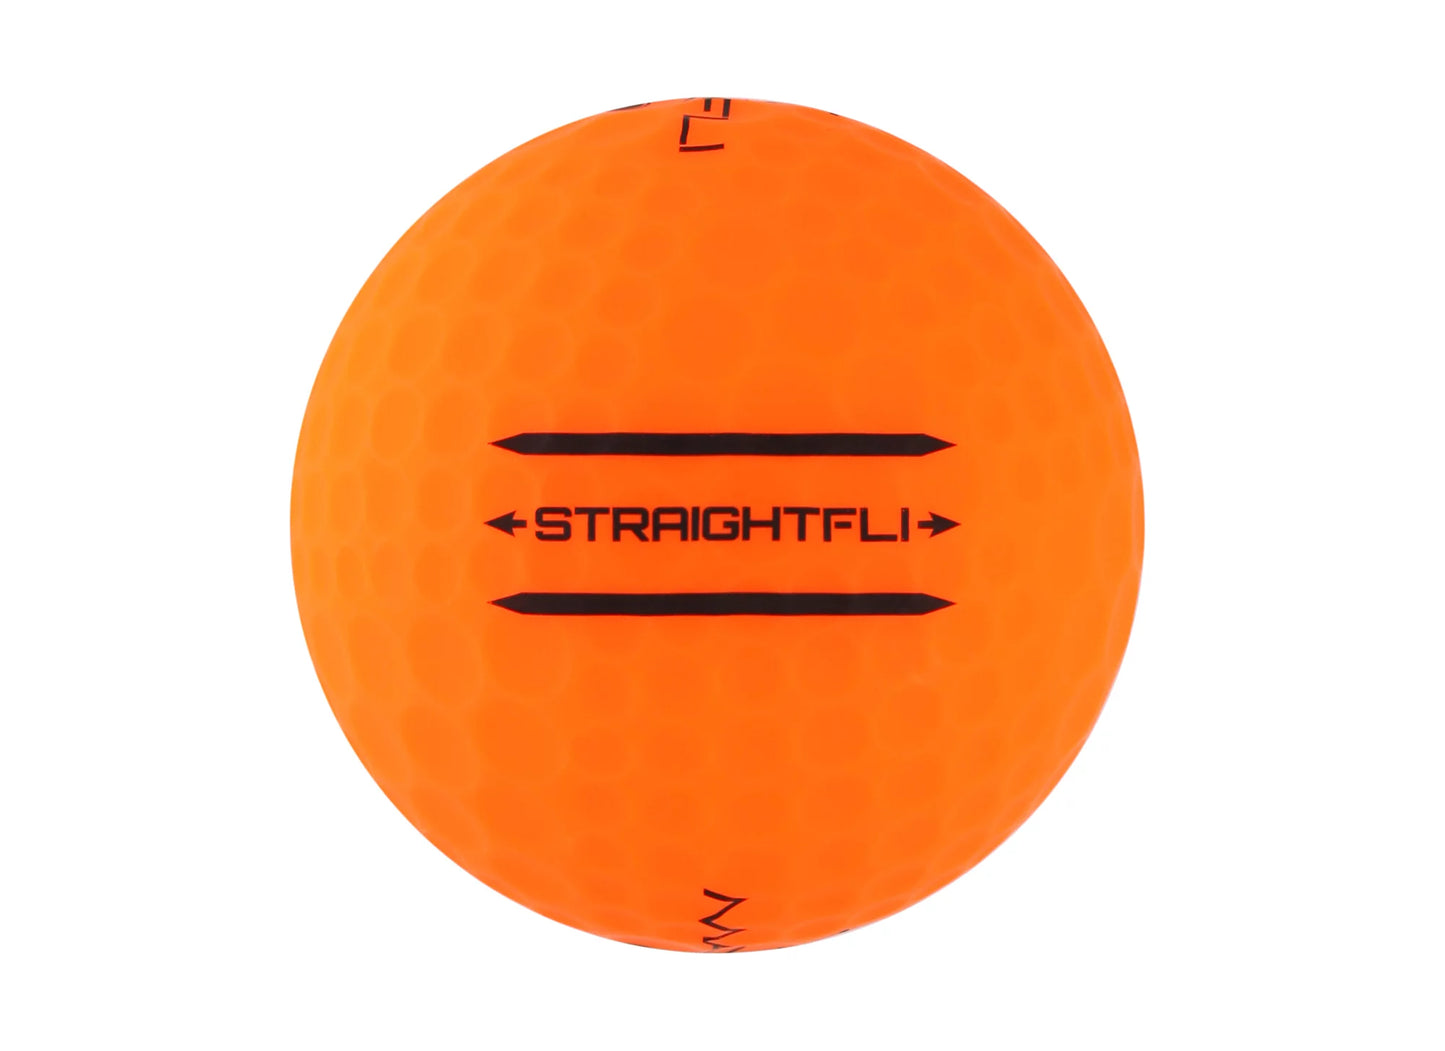 Maxfli Straightfli Matte Orange - 12 Balls